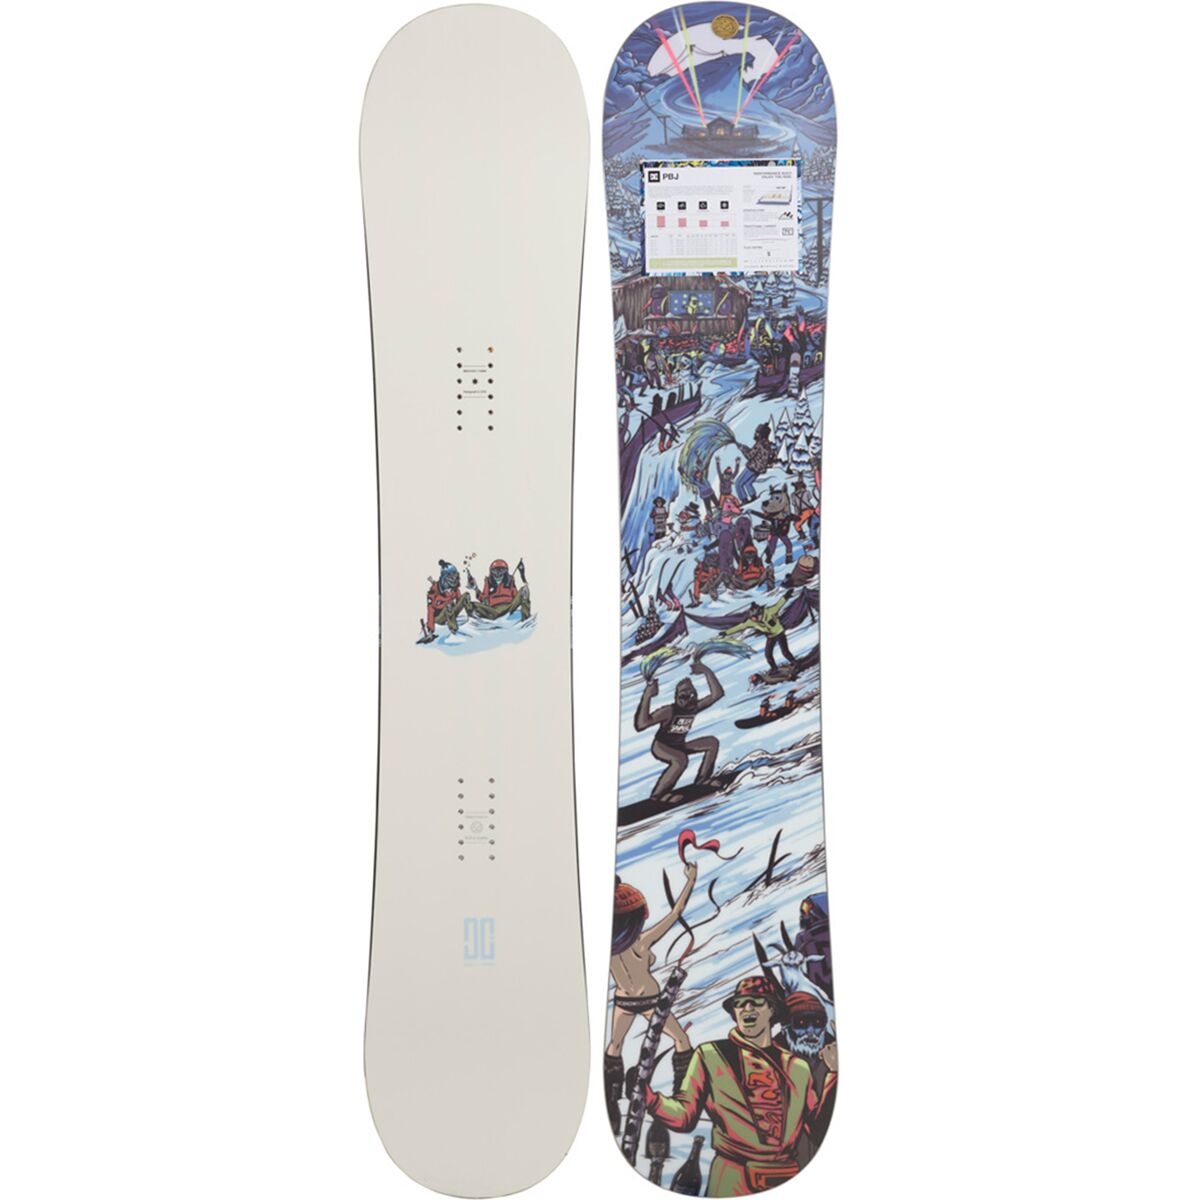 DC PBJ Snowboard